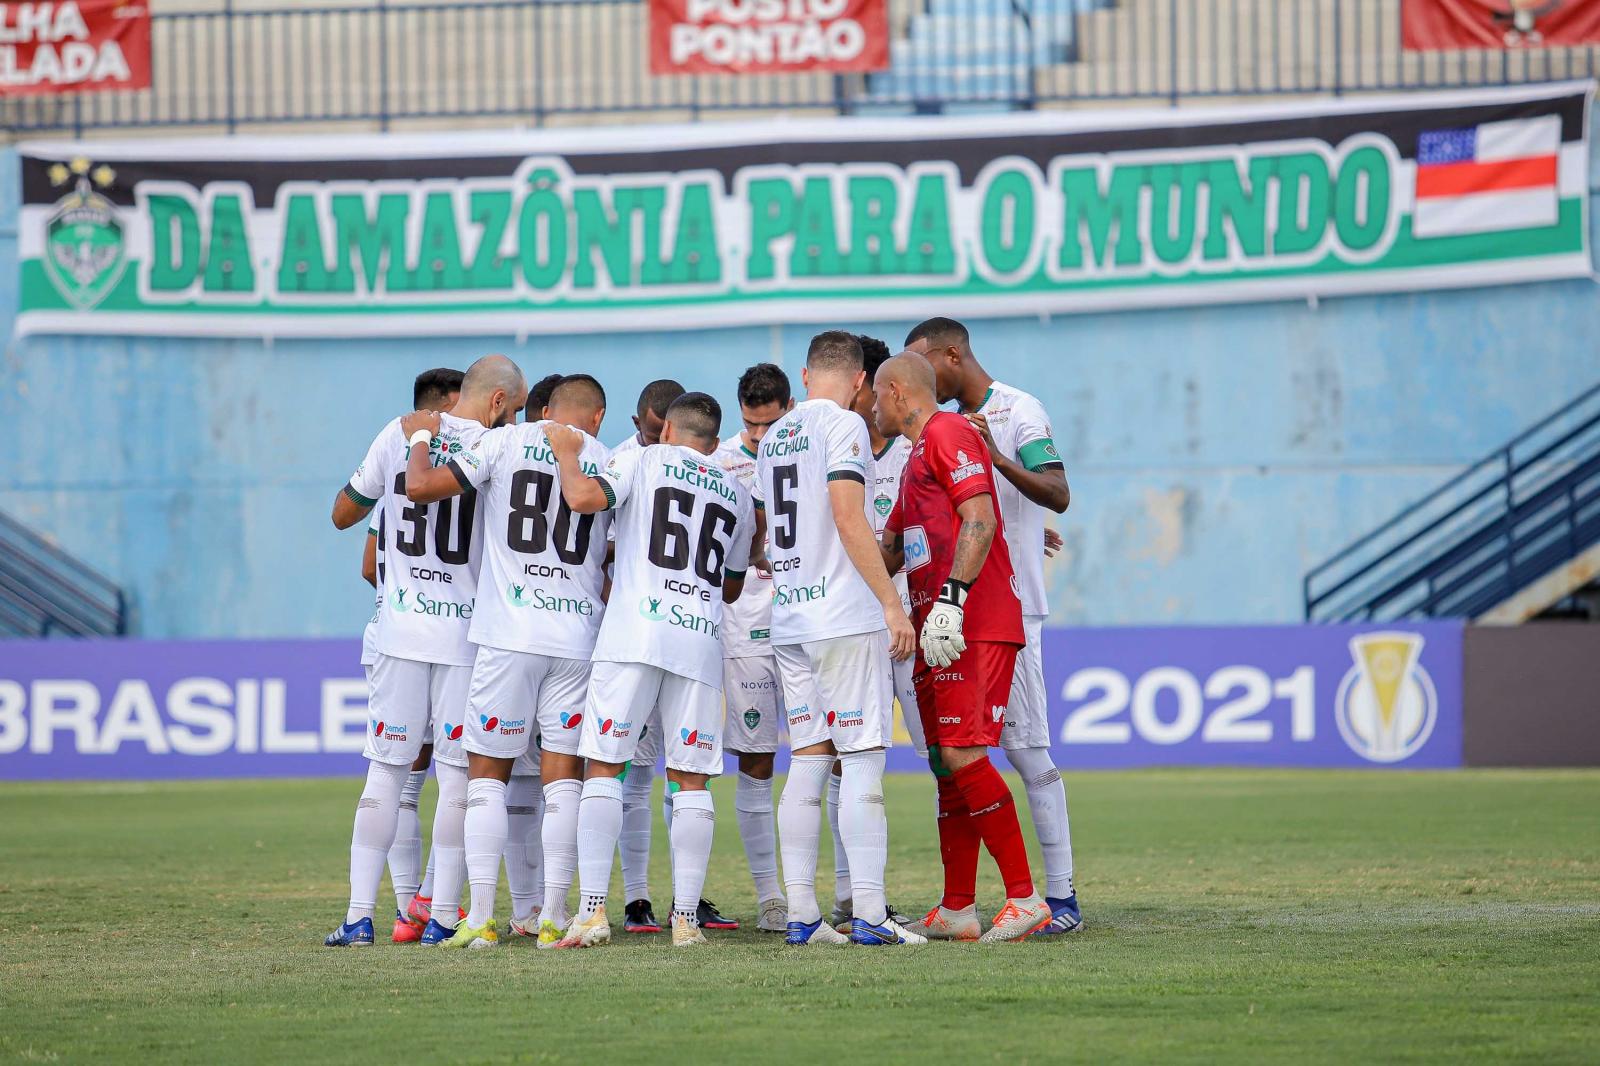 Dia de estreia! Manaus FC recebe Novorinzontino pelo quadrangular final